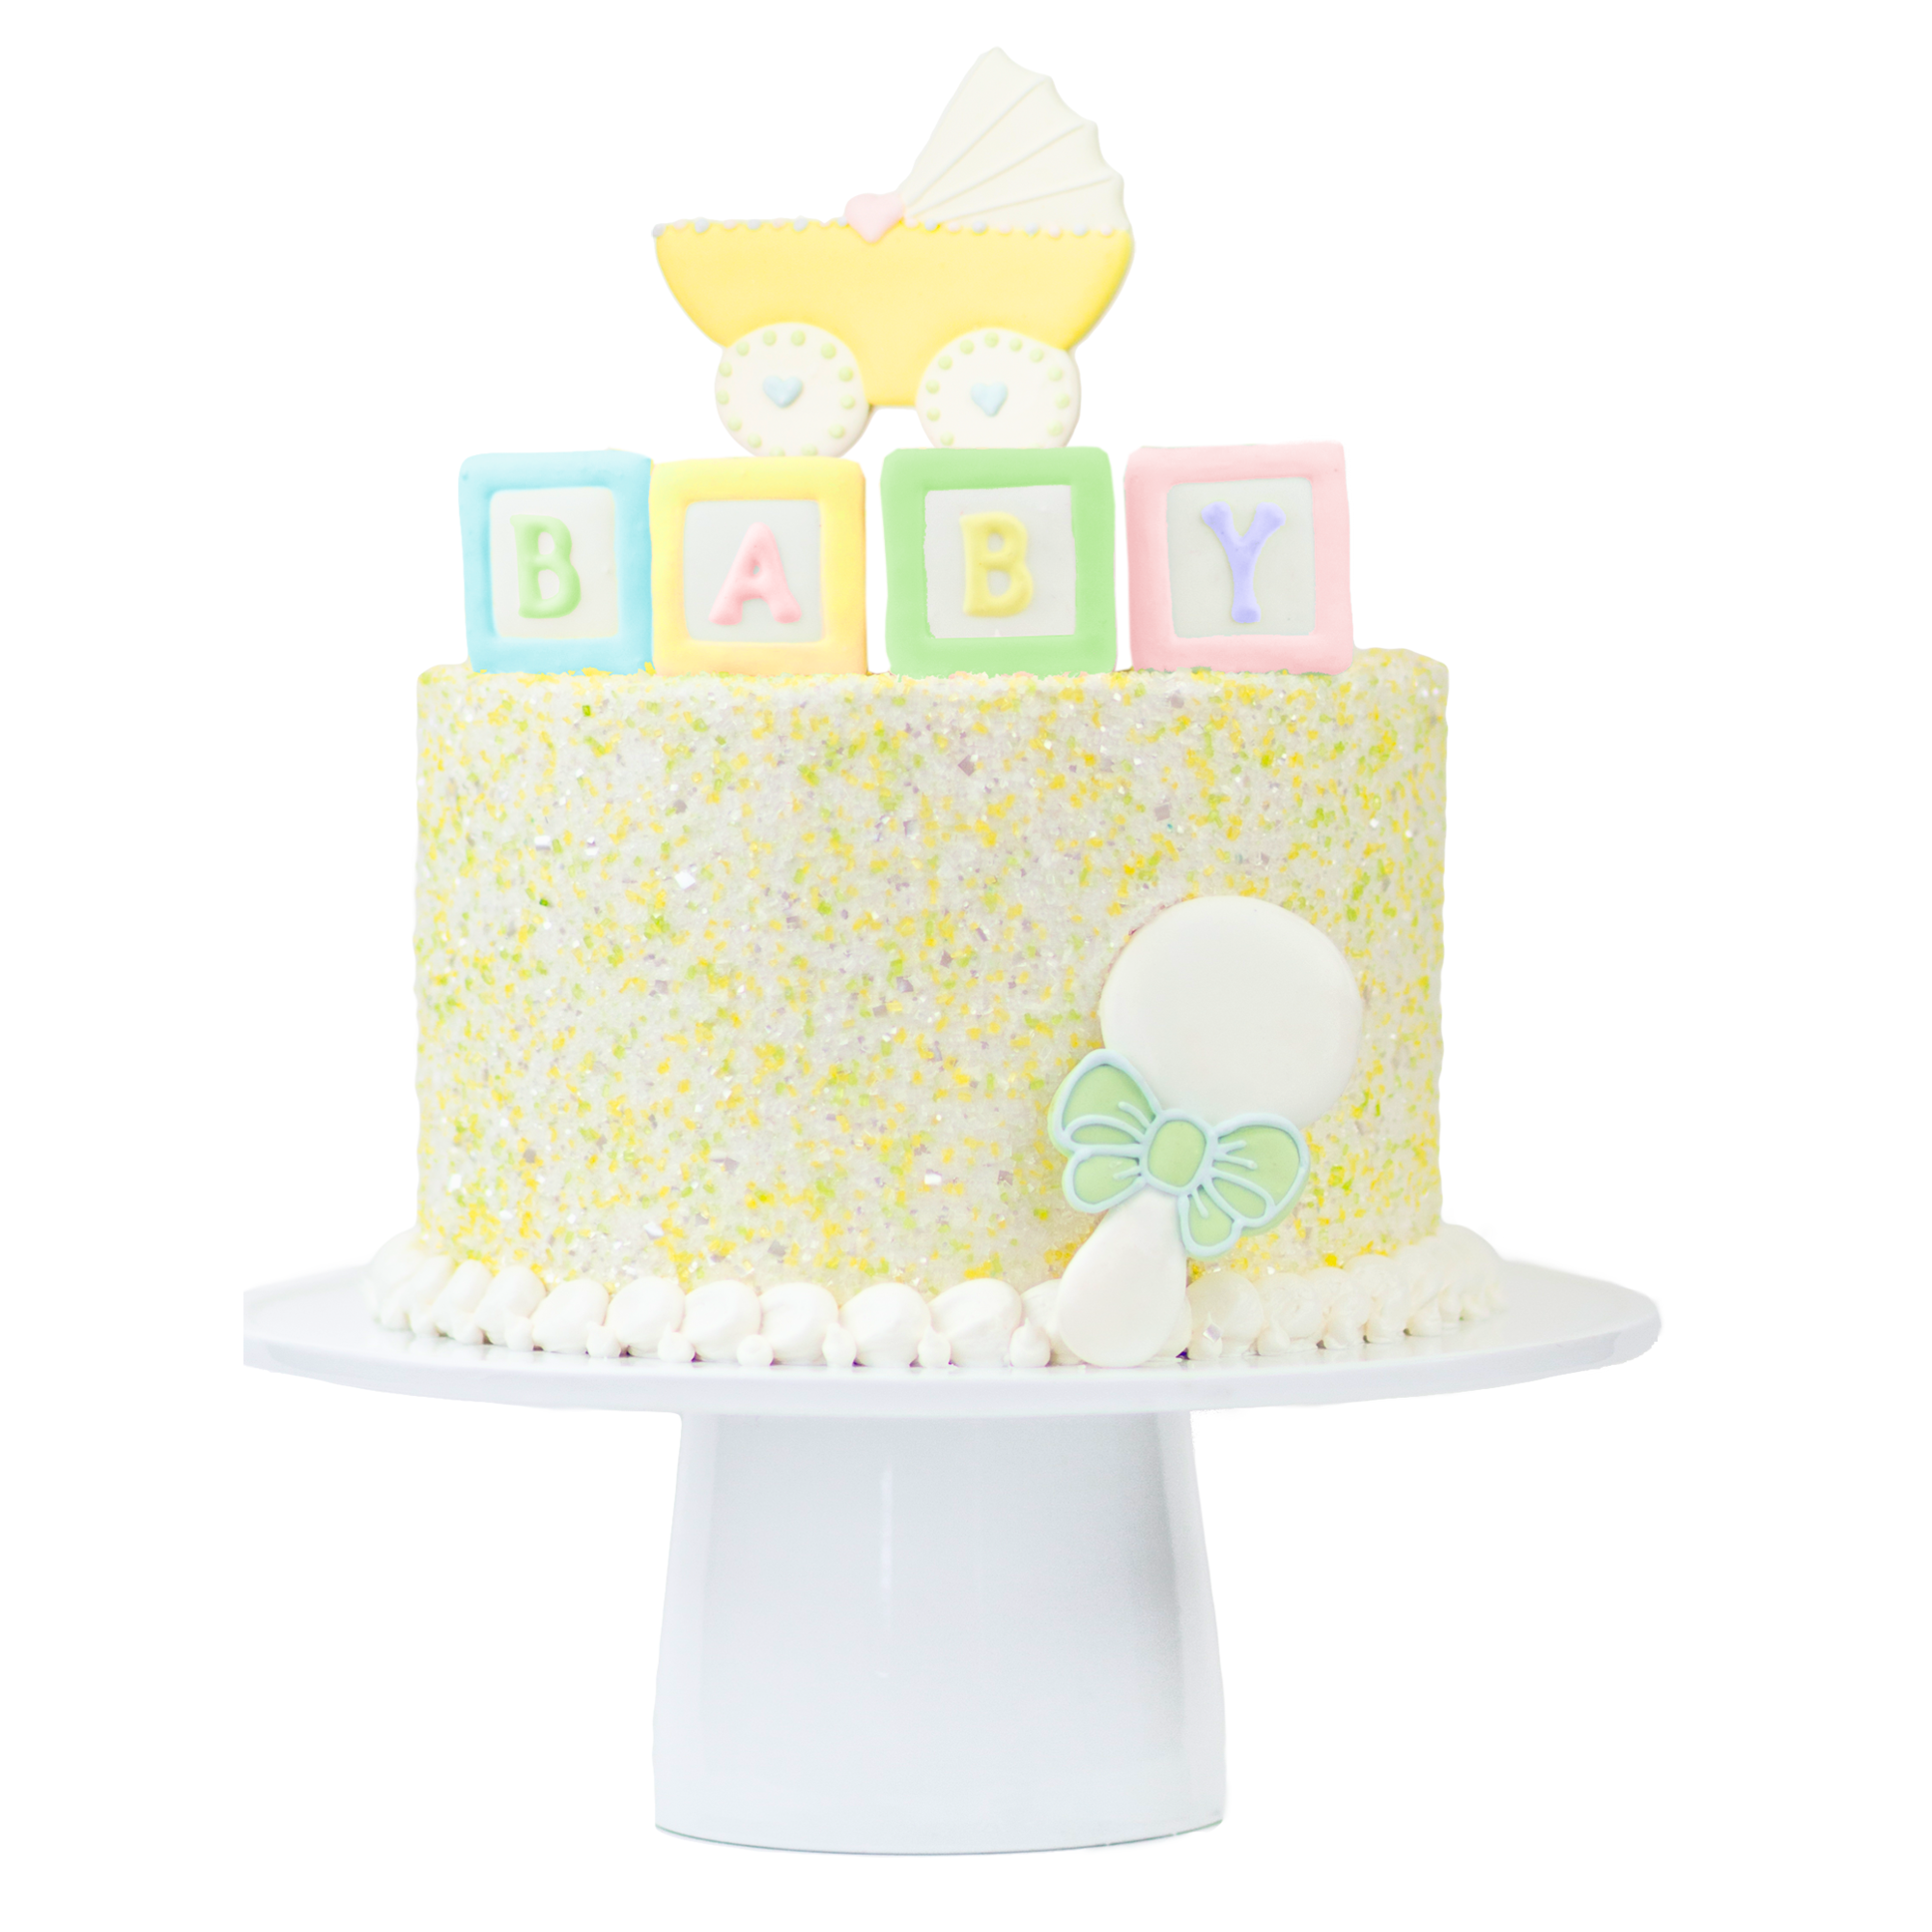 Baby Shower Designer Cake Decor